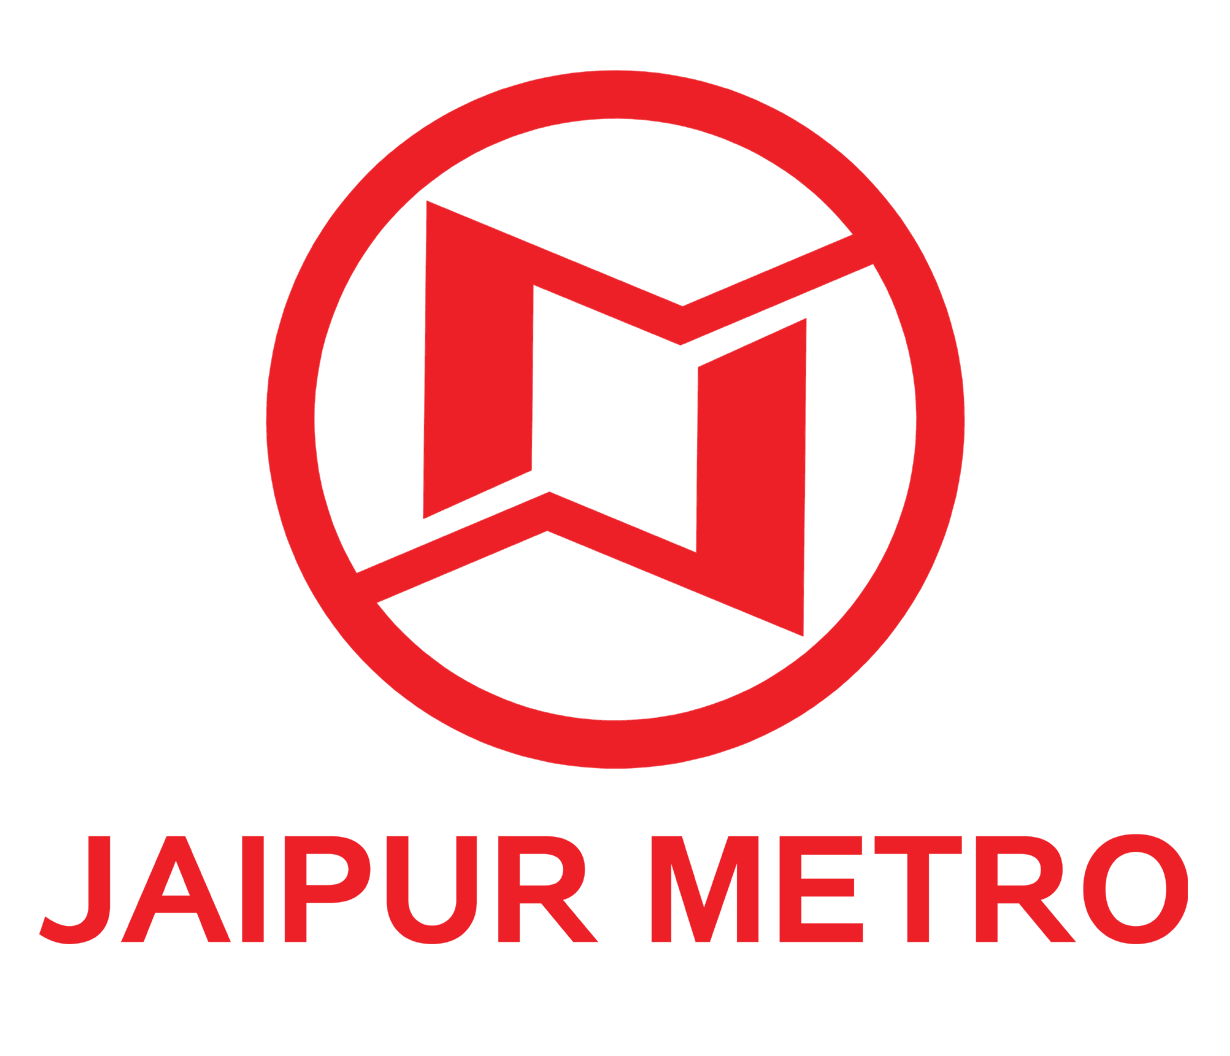 Metro Logo - File:Jaipur metro logo.png - Wikimedia Commons